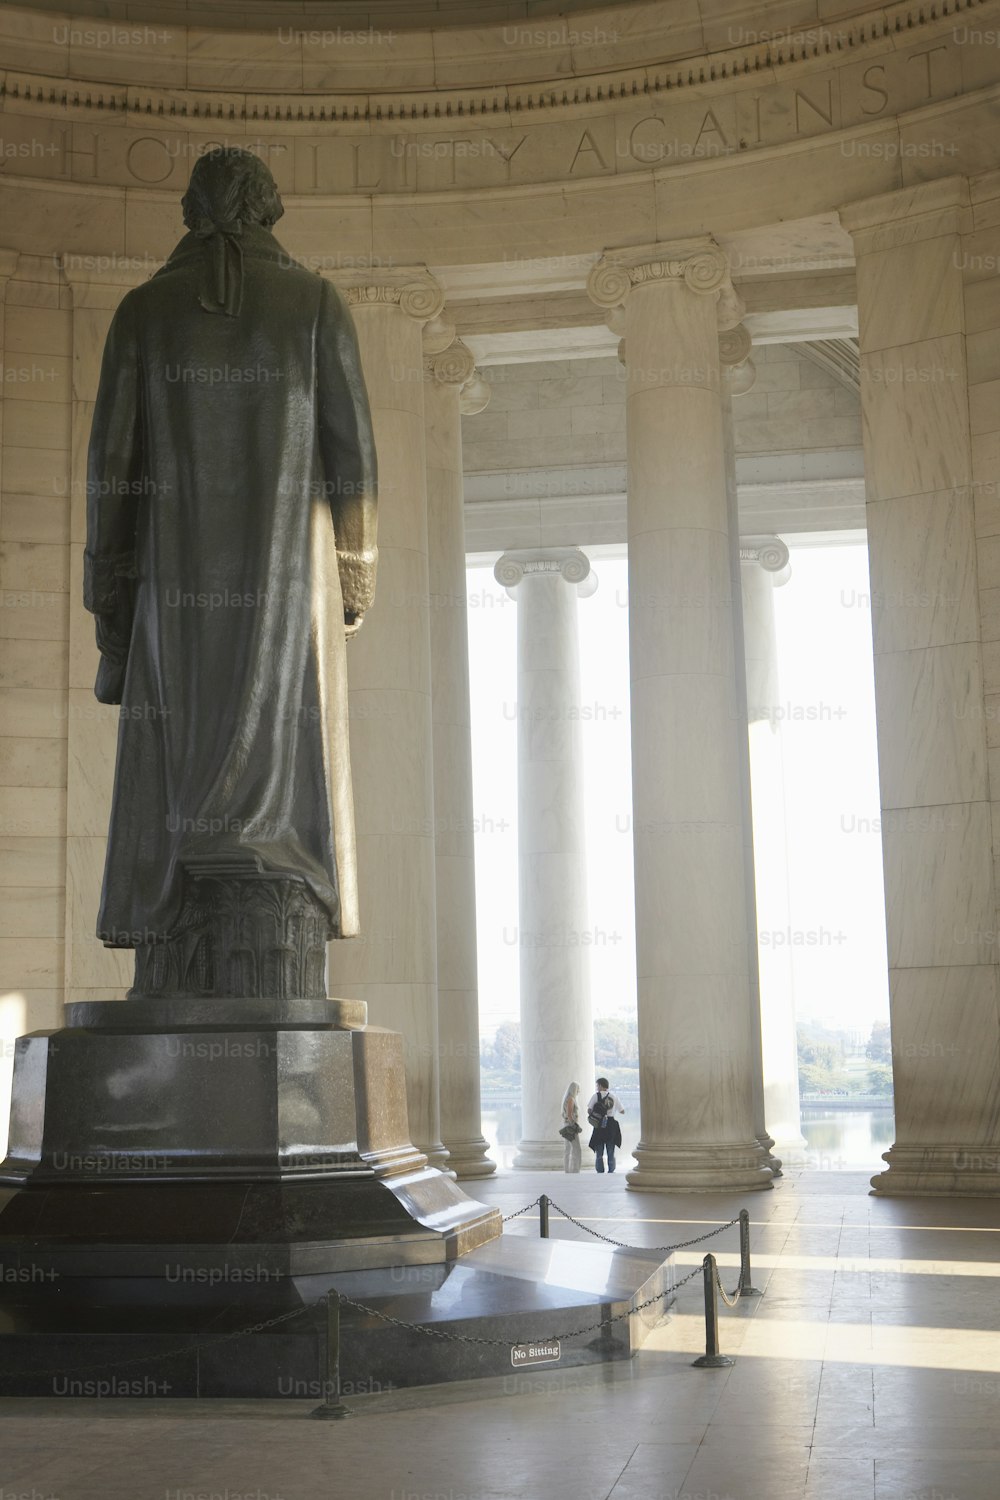 リンカーン記念館のエイブラハムリンカーンの像